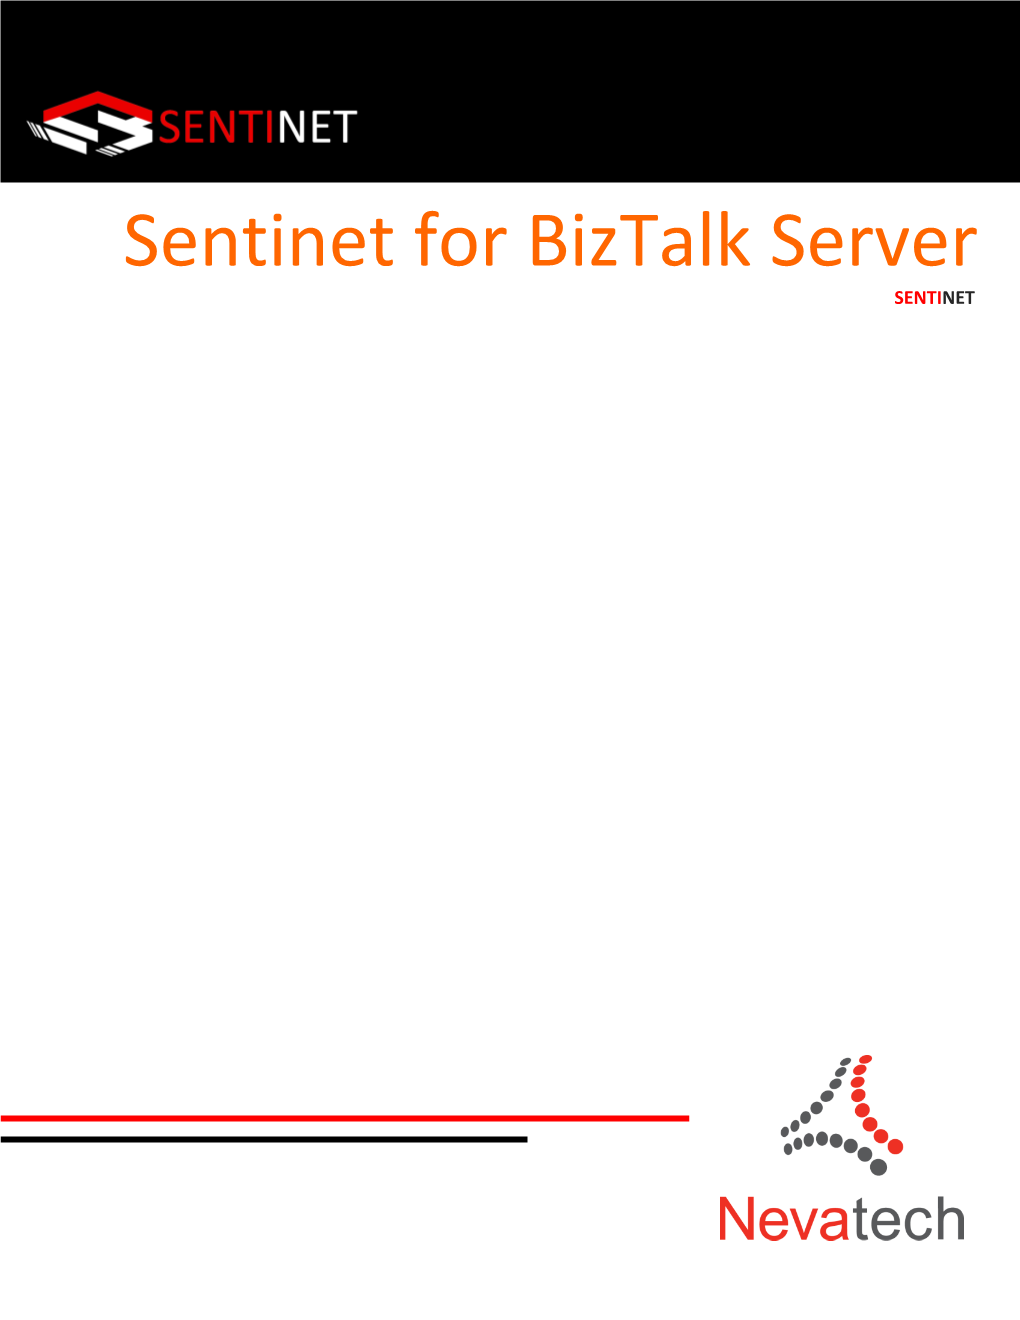 Sentinet for Biztalk Server SENTINET SENTINET Sentinet for Biztalk Server 1